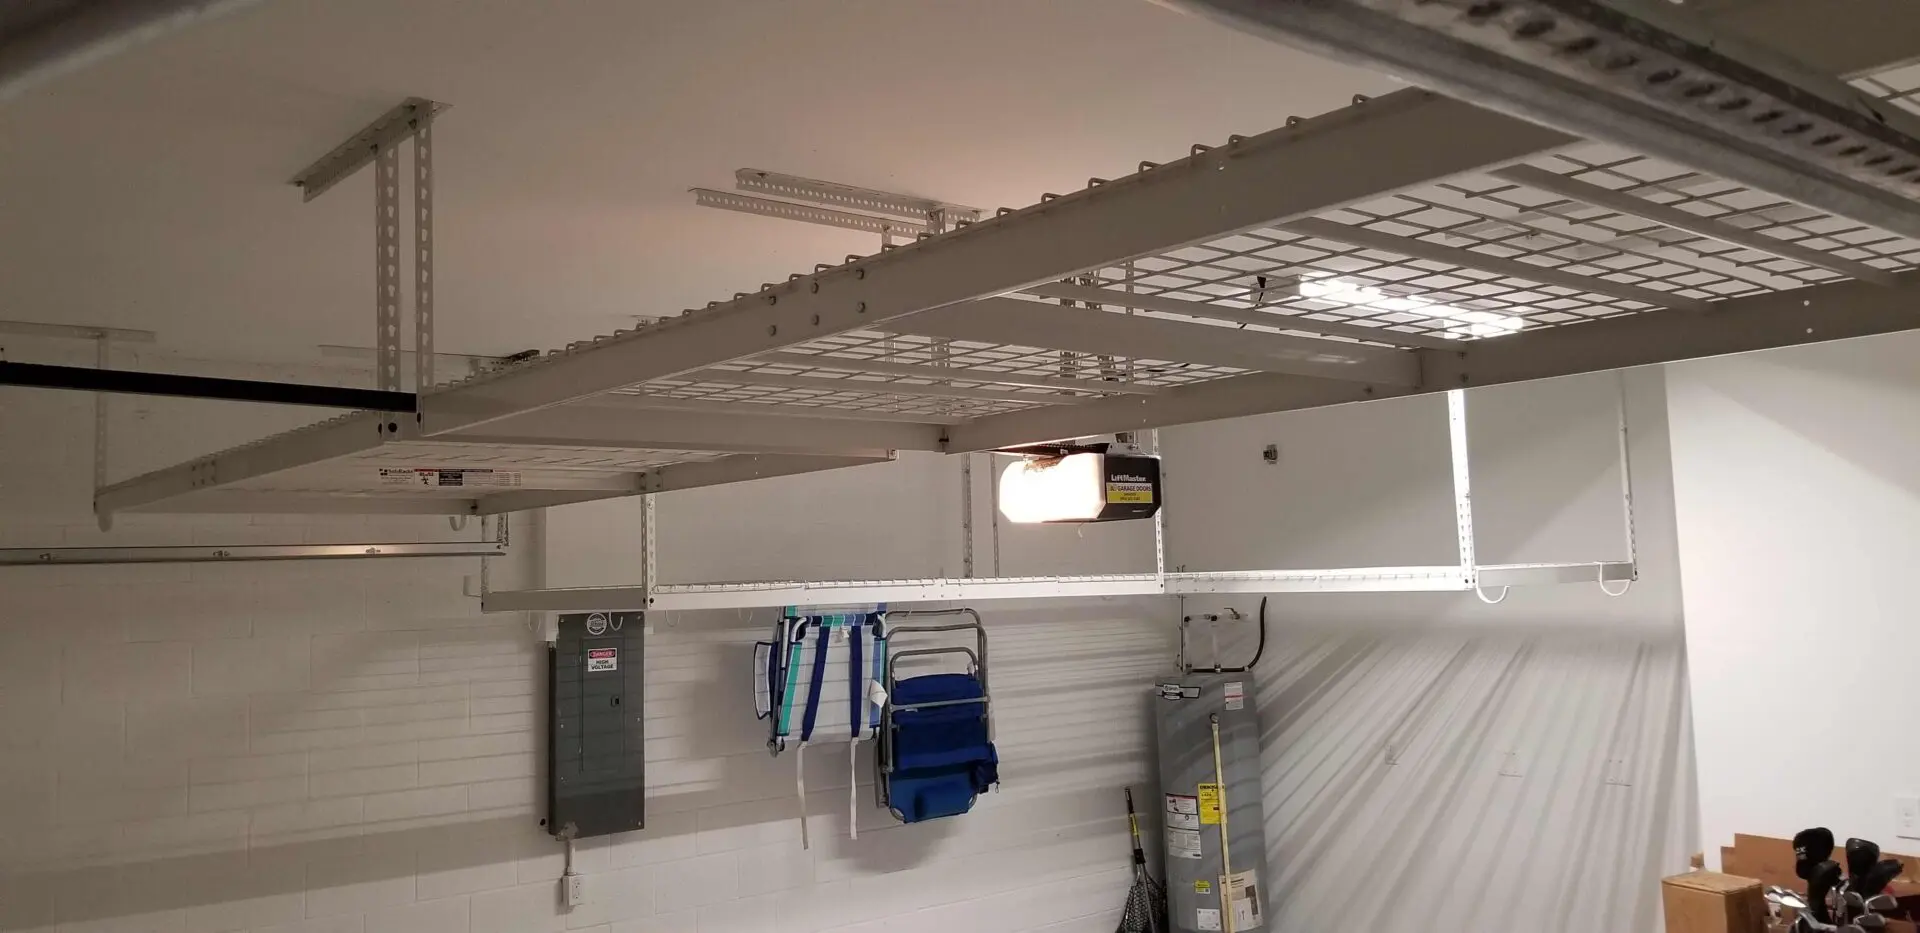 Two levels of overhead racks